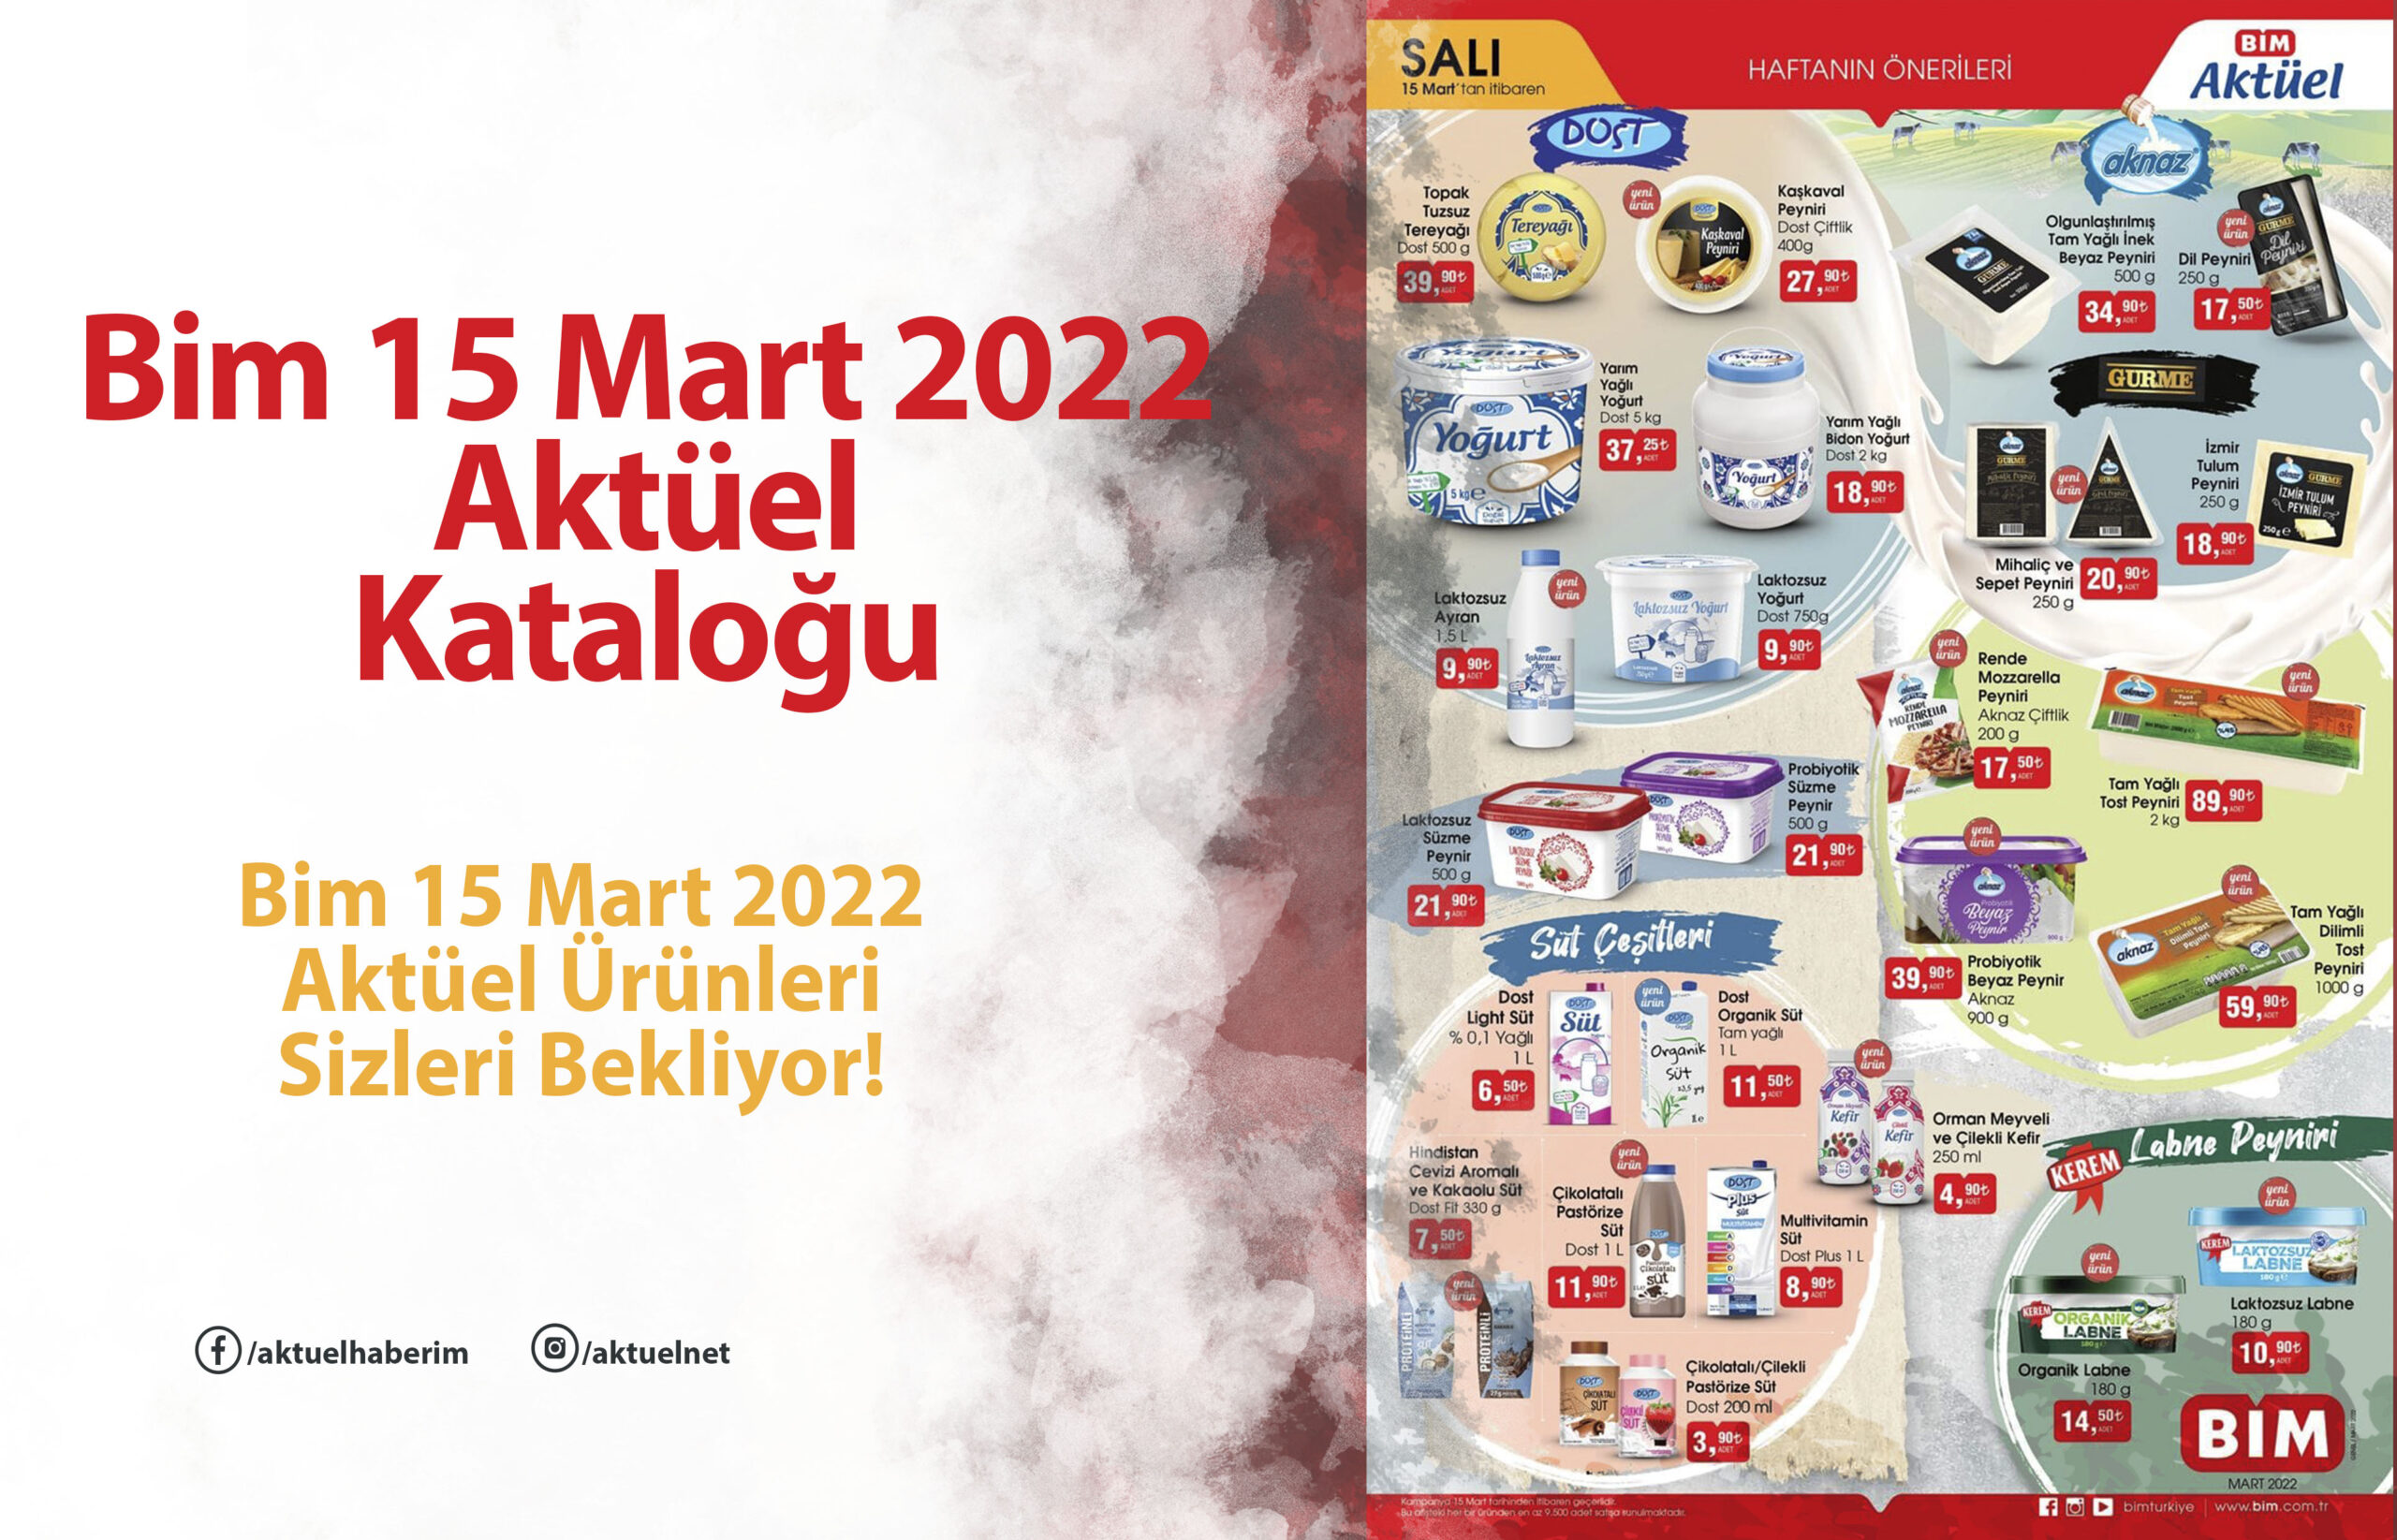 Bim 15 Mart 2022 Kataloğu Yayınlandı!